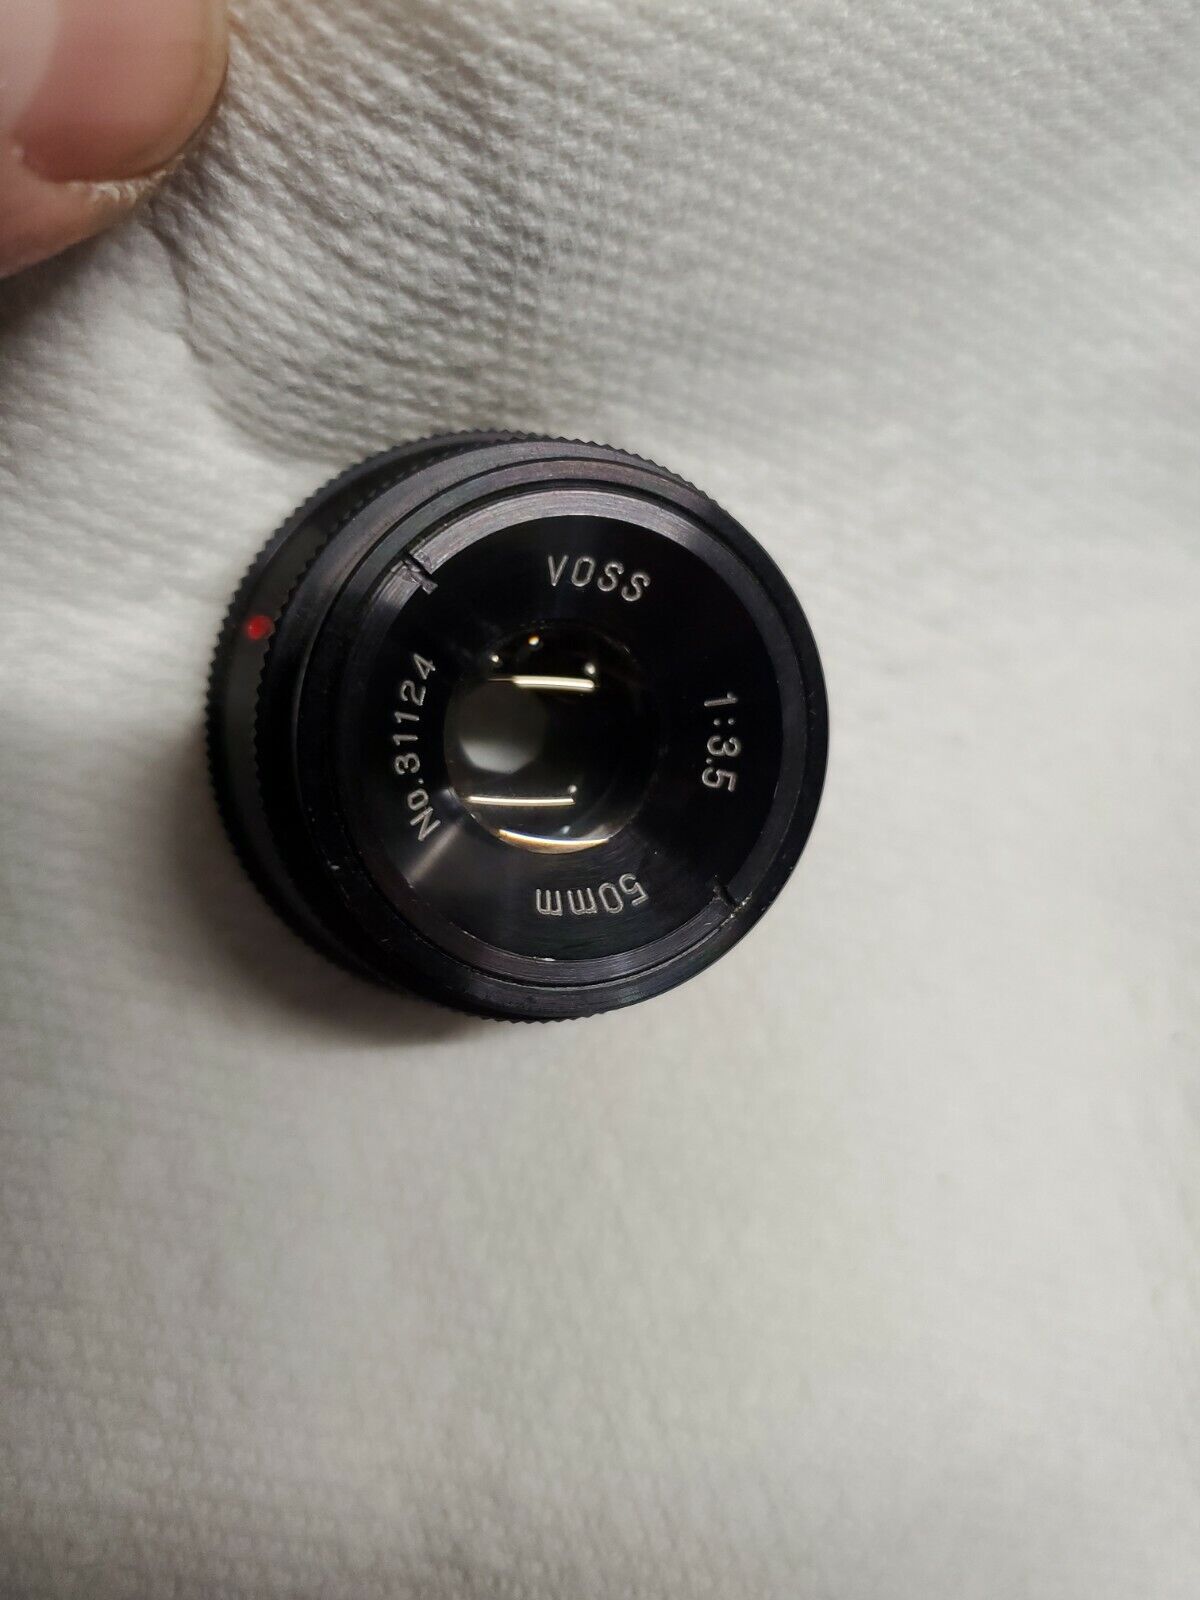 Voss 50mm 1:3.5 No. 31124 Lens